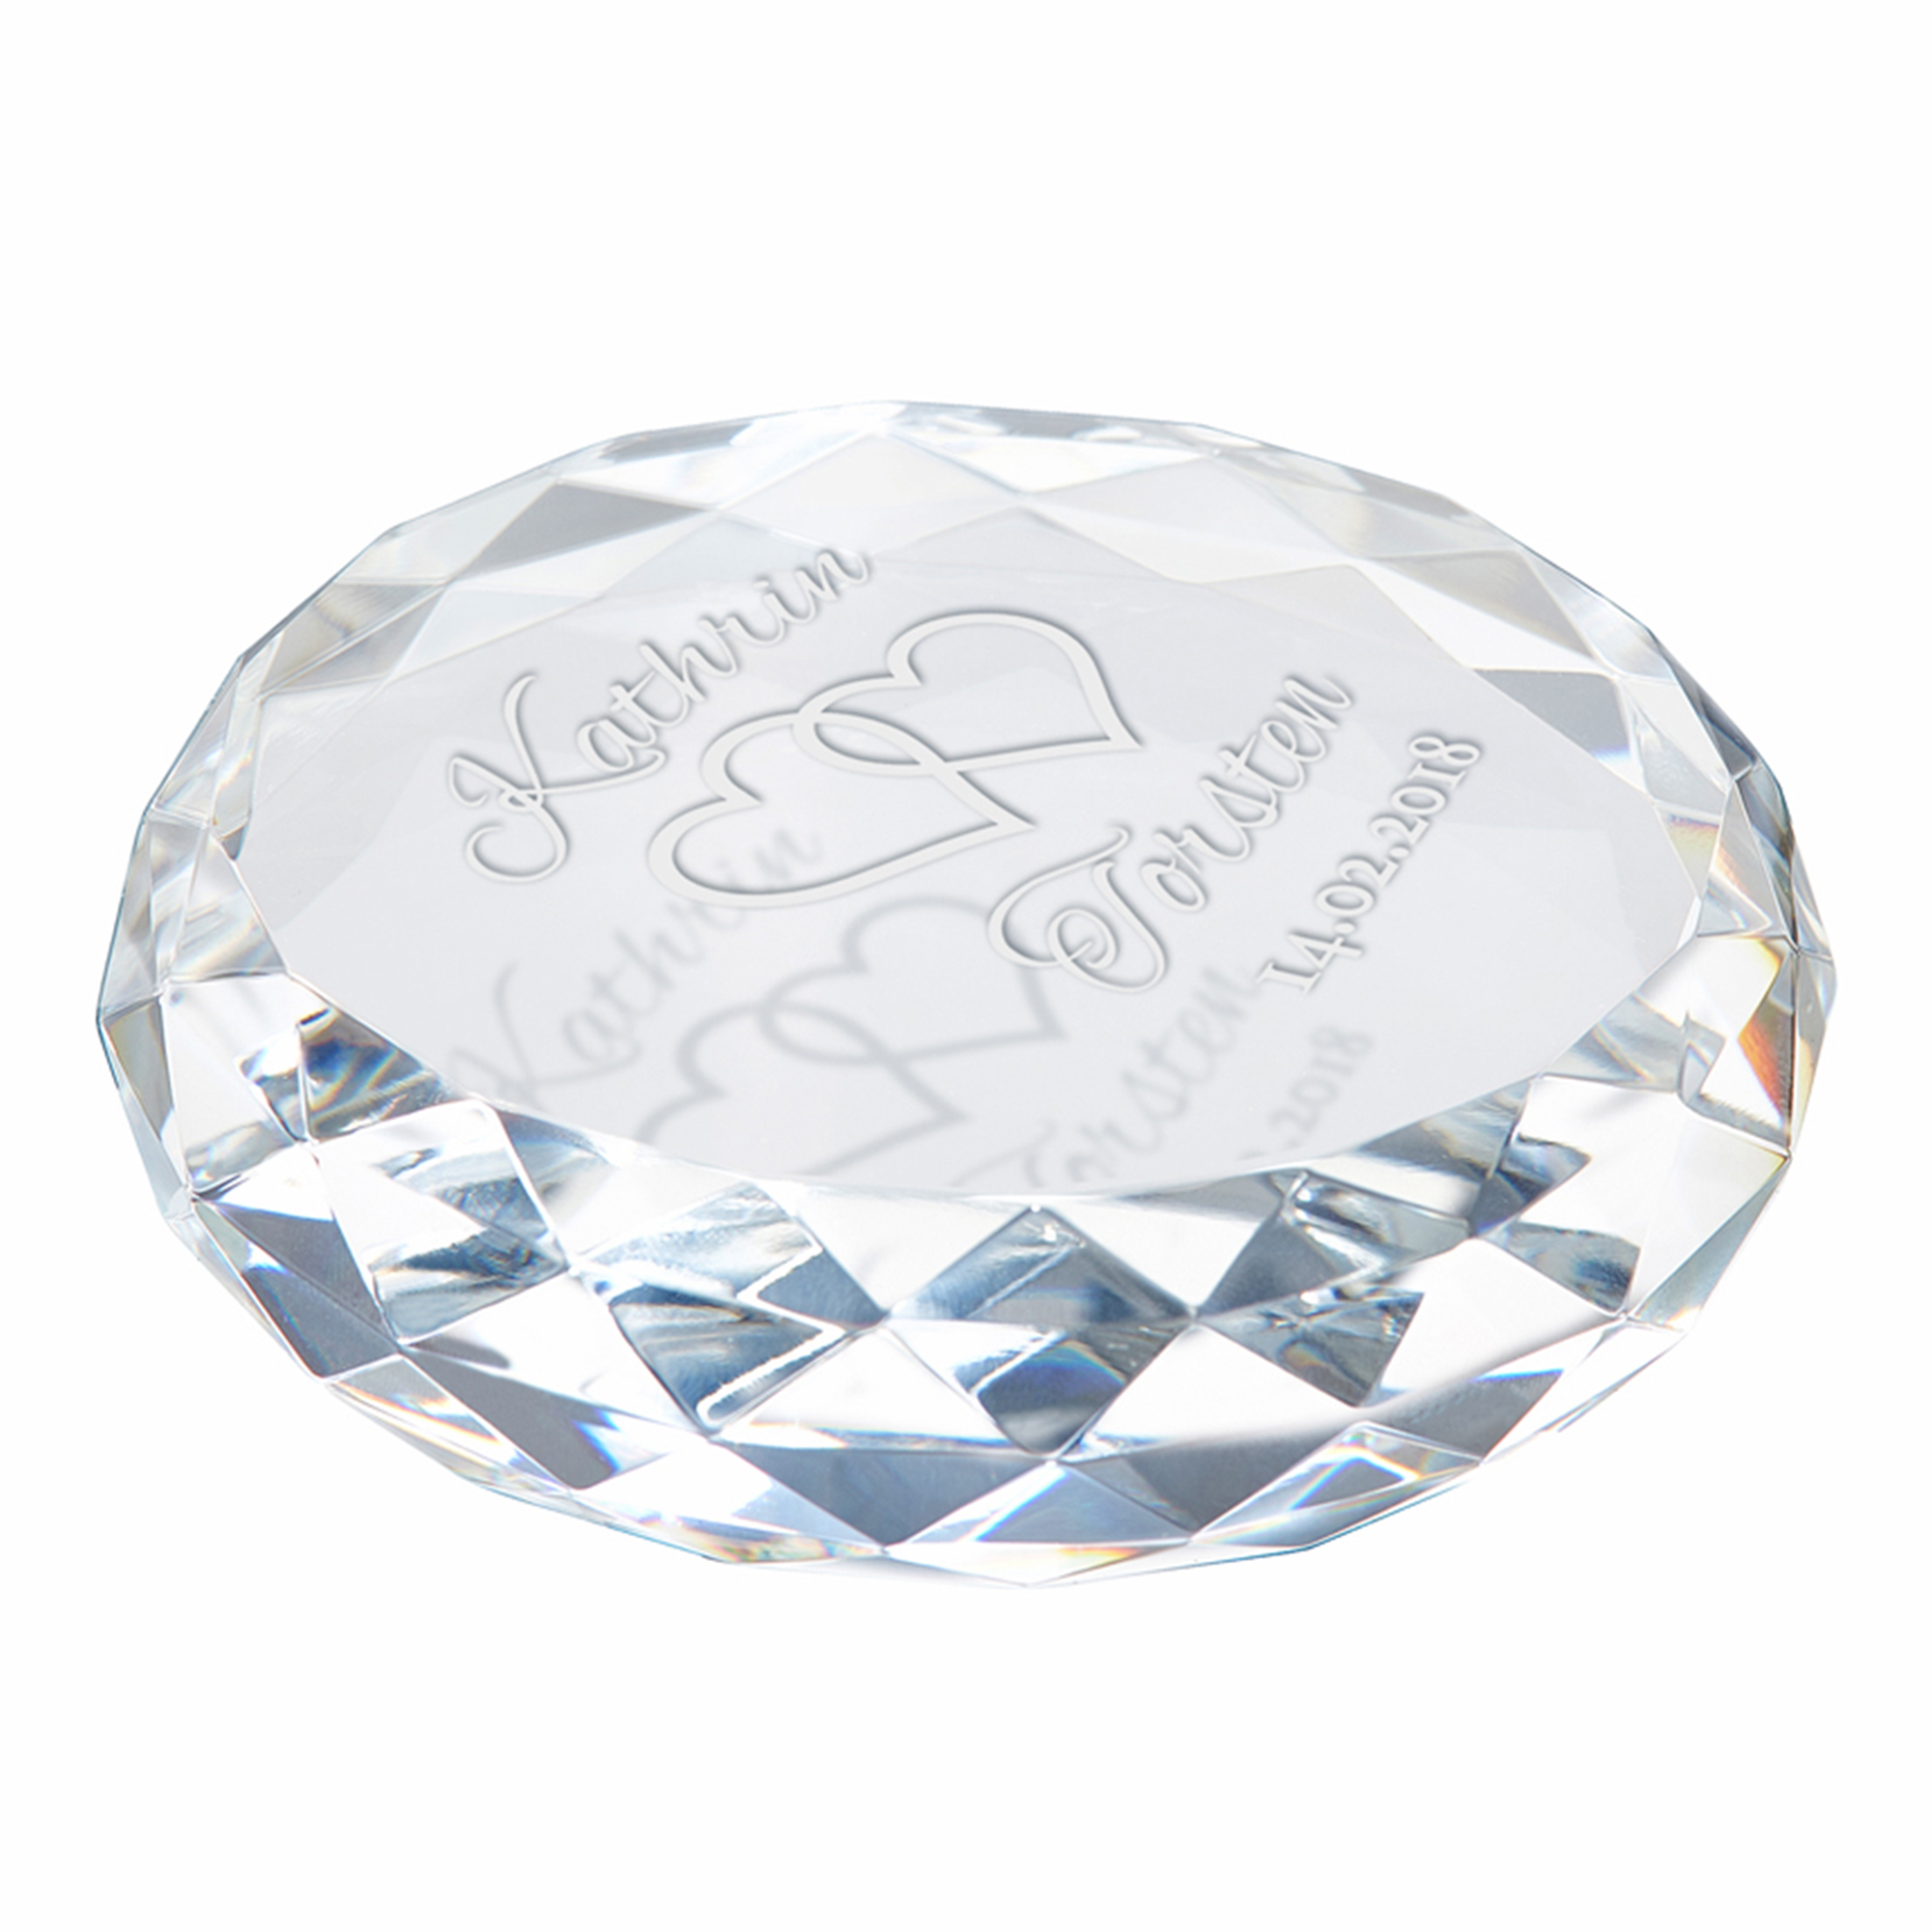 Kristall mit Gravur zur Hochzeit 4132 - 6